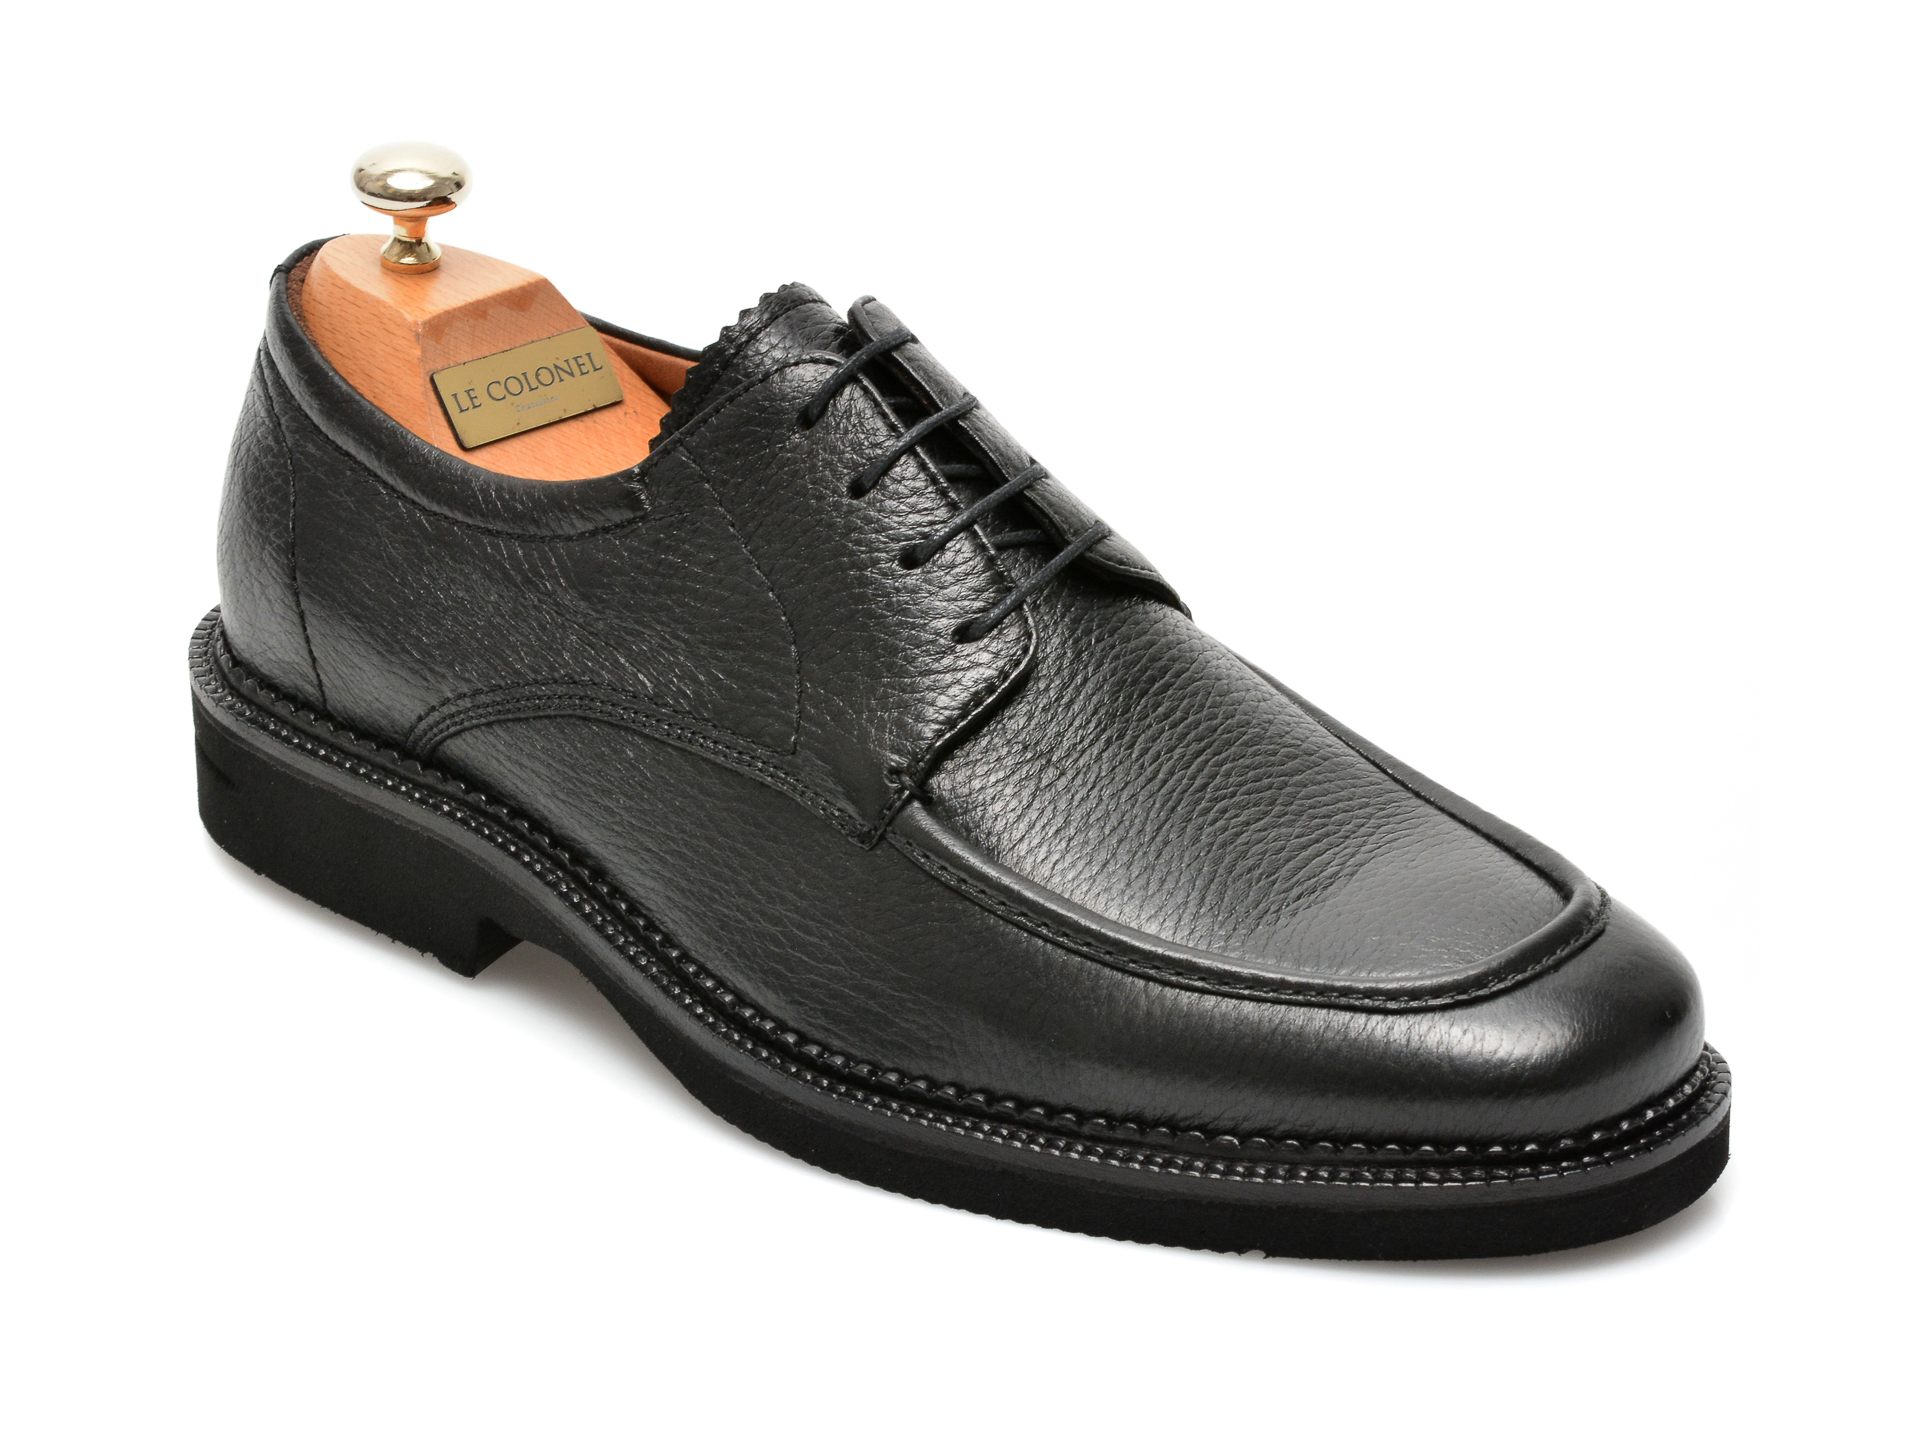 Pantofi LE COLONEL negri, 63501, din piele naturala Le Colonel Le Colonel